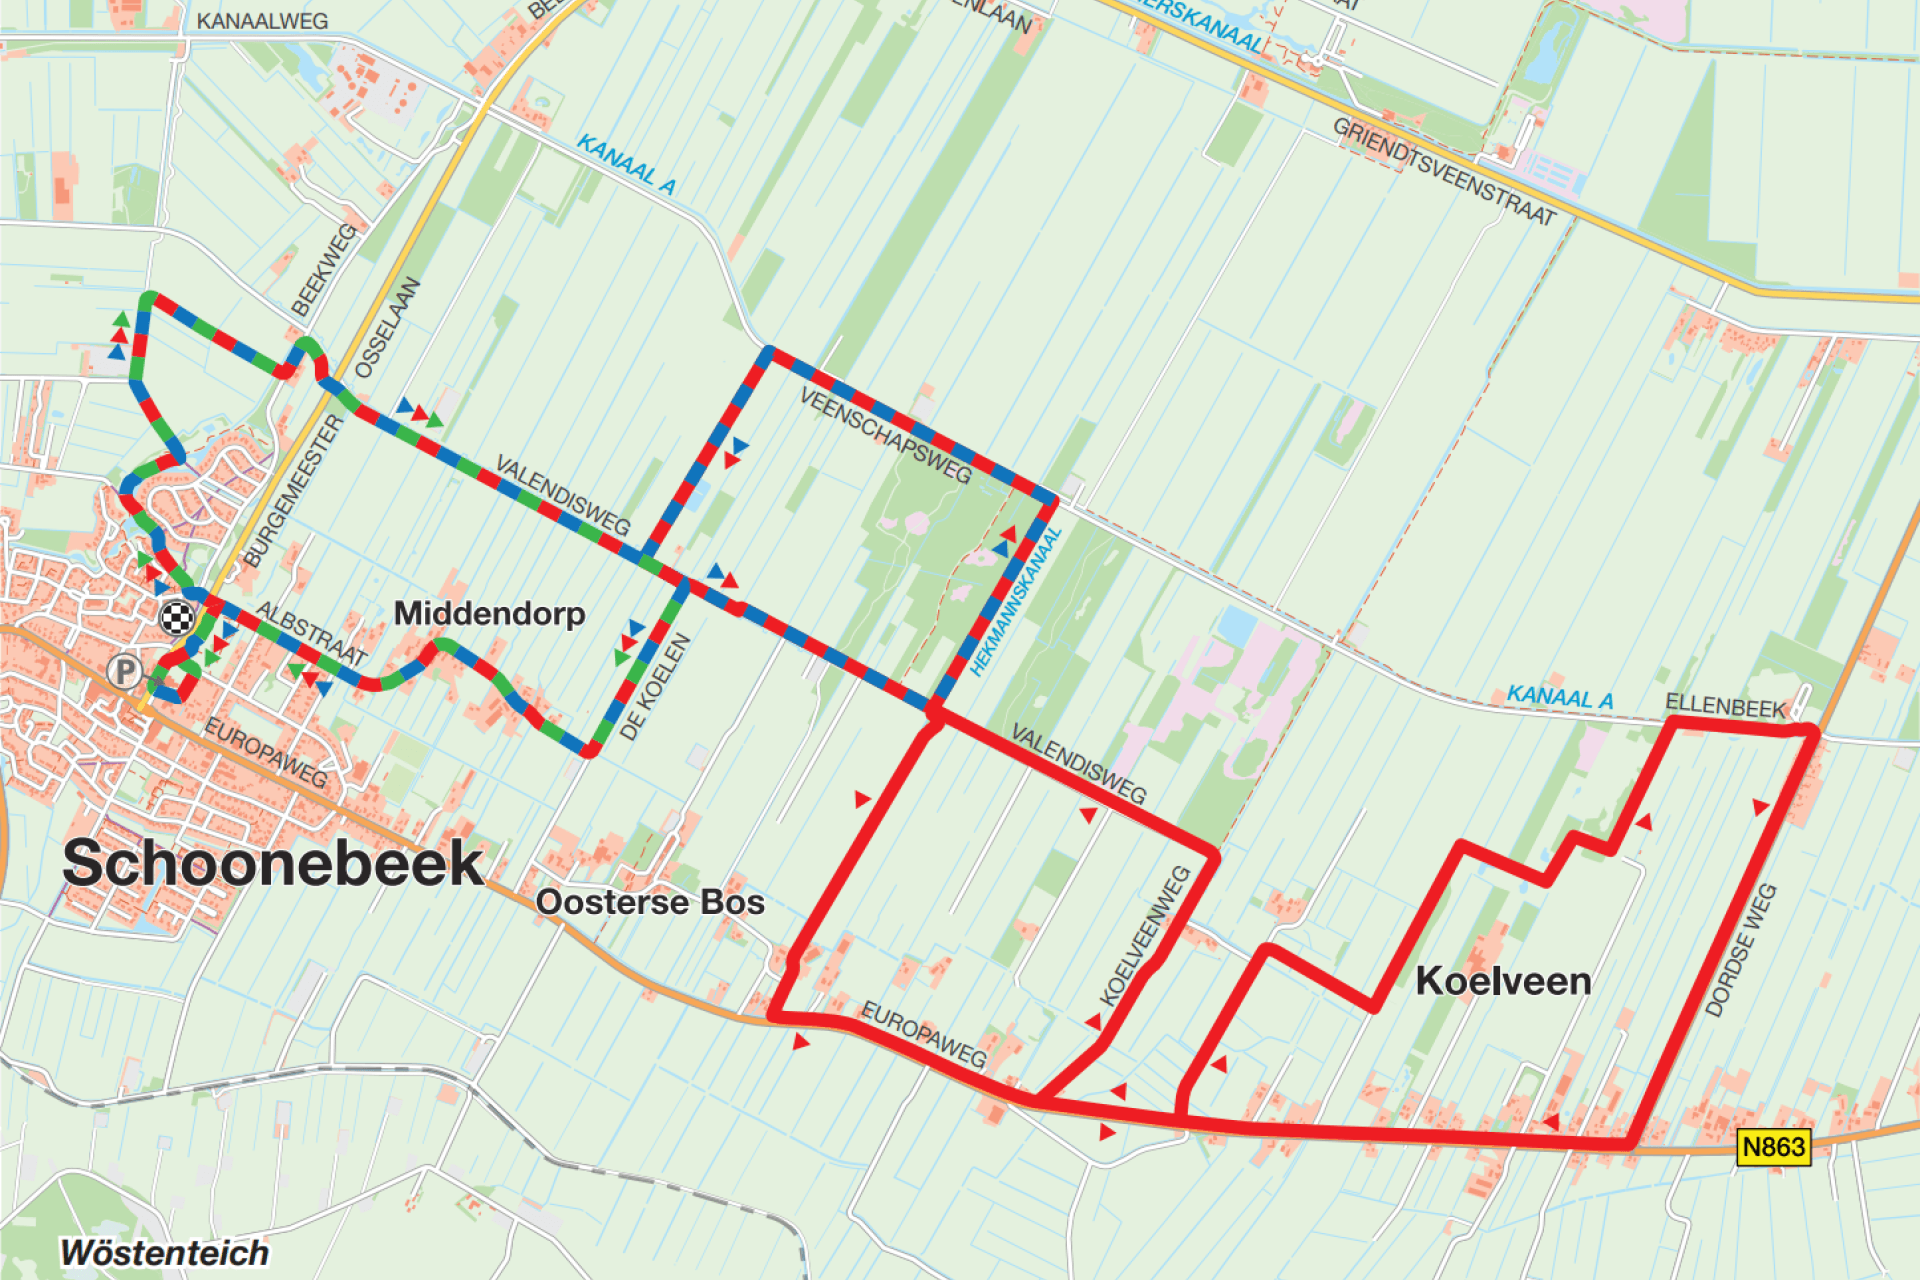 Hardlooproute in Schoonebeek weergegeven op een plattegrond